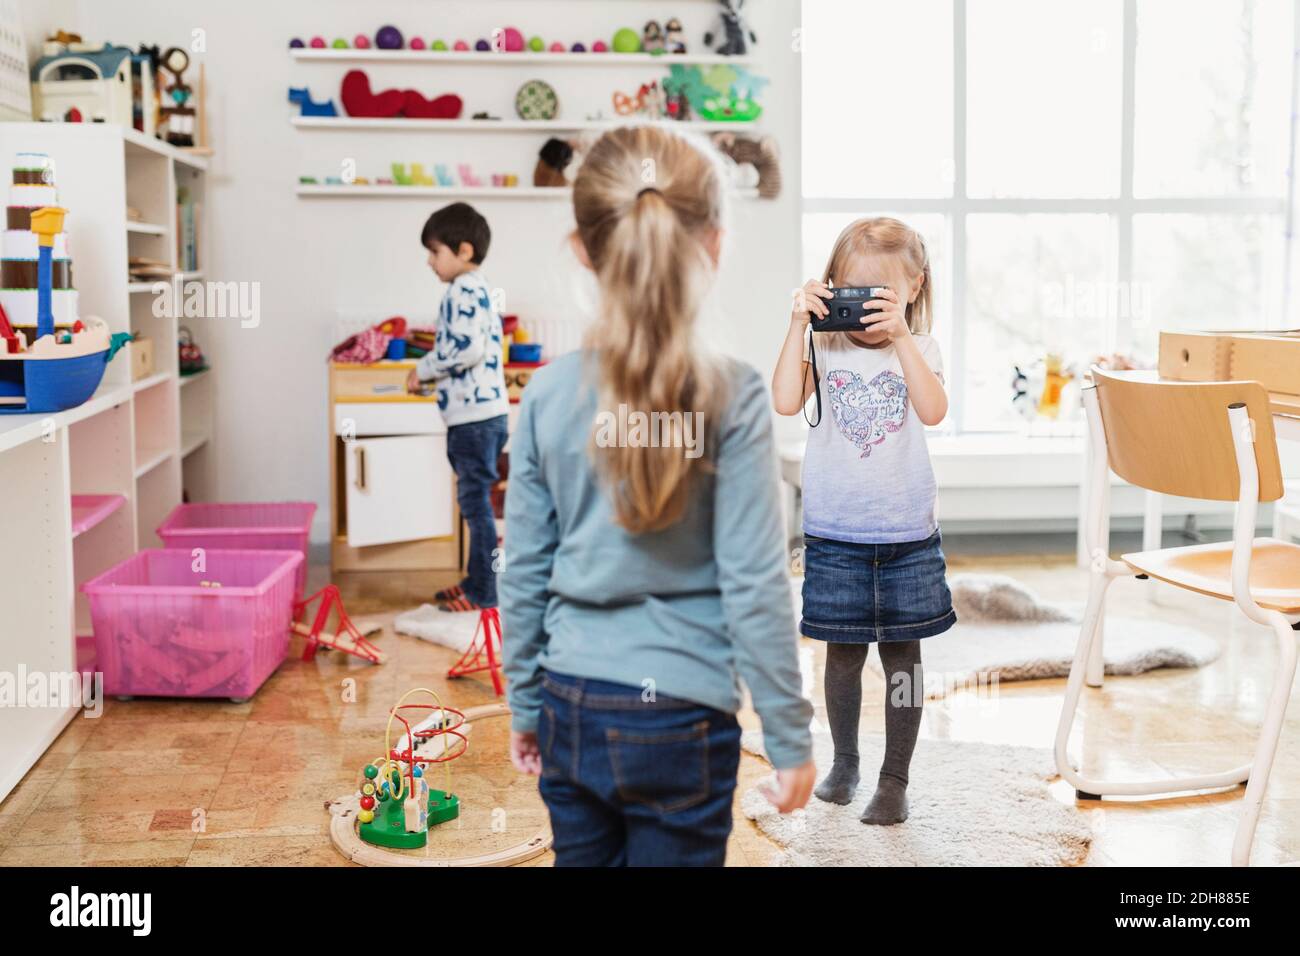 Petite fille prenant la photo d'un ami à travers un appareil photo jouet dans la salle de classe Banque D'Images